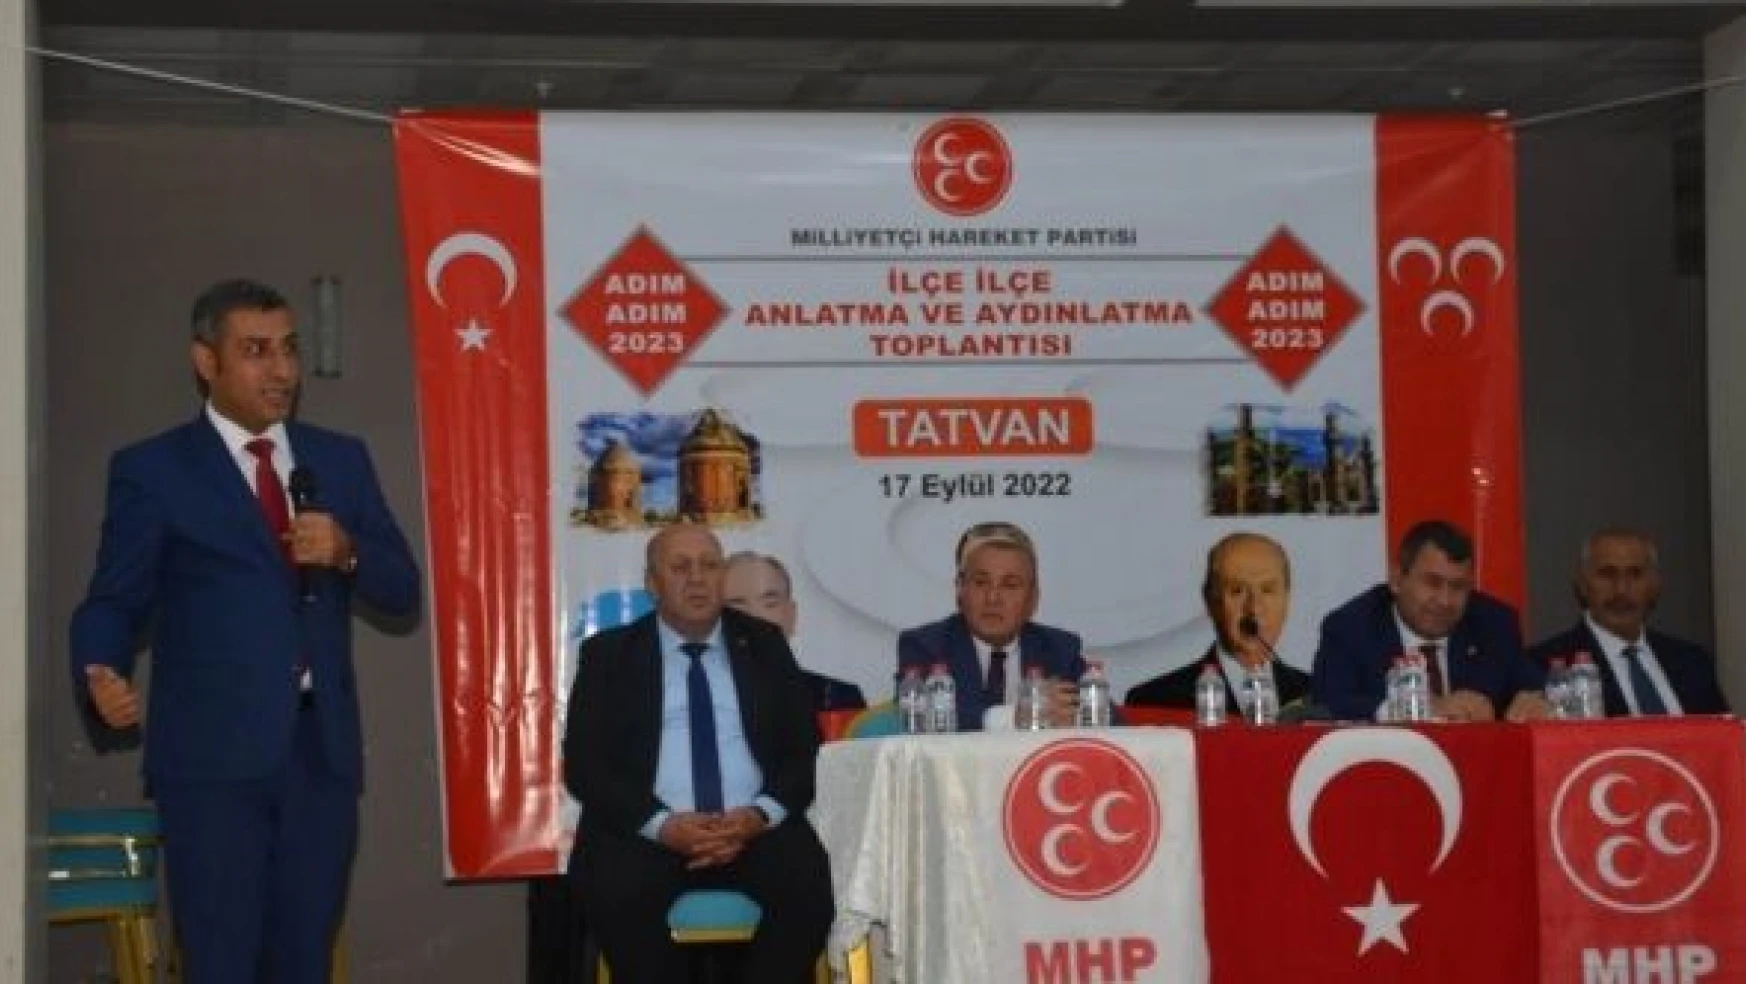 MHP heyeti, Tatvan'da 'Adım Adım 2023' toplantısı düzenledi